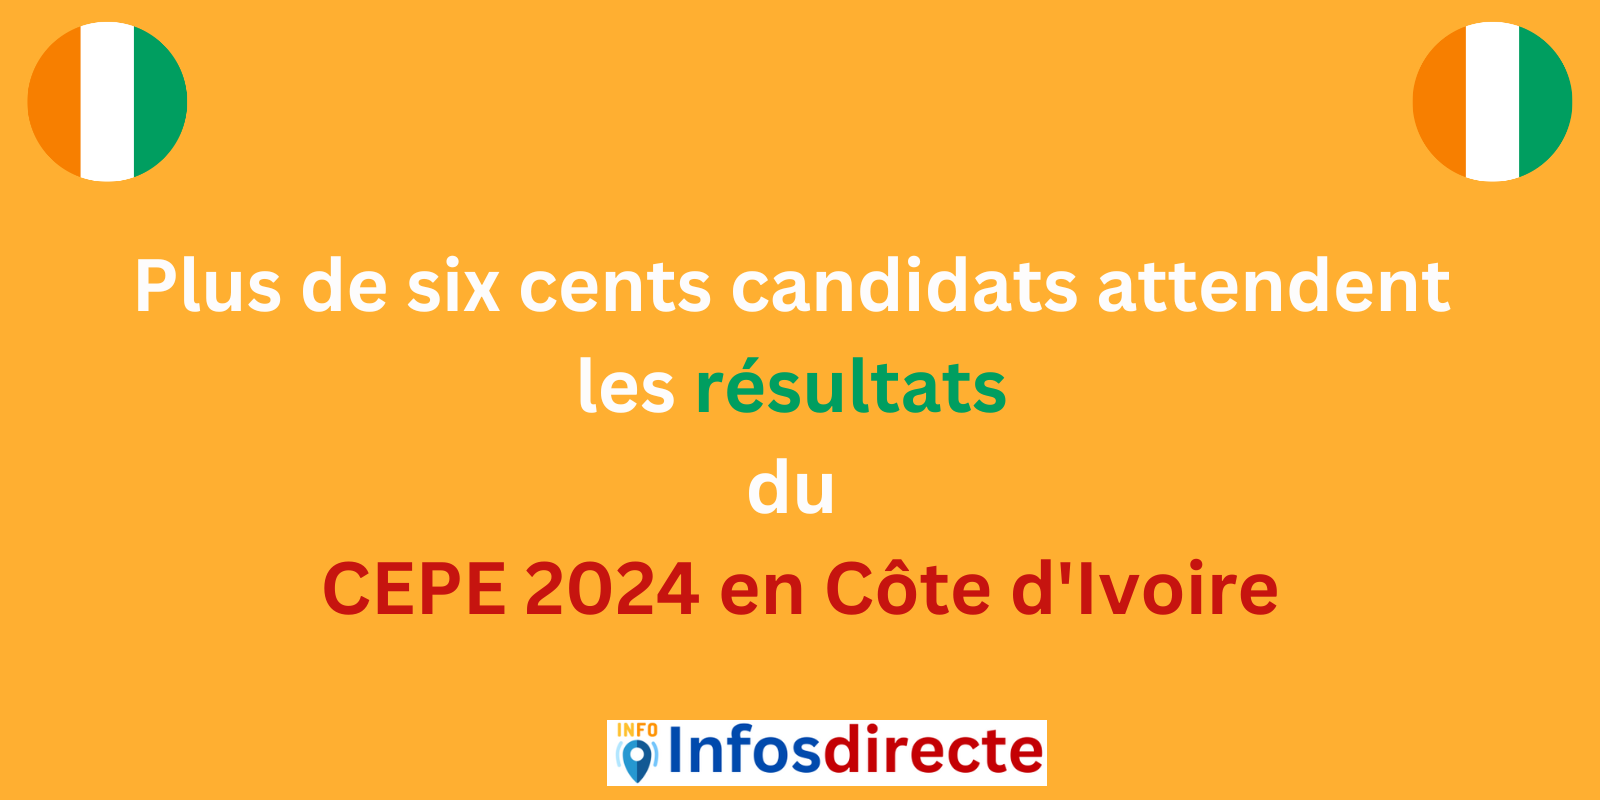 Plus de six cents candidats attendent les résultats du CEPE 2024 en Côte d'Ivoire